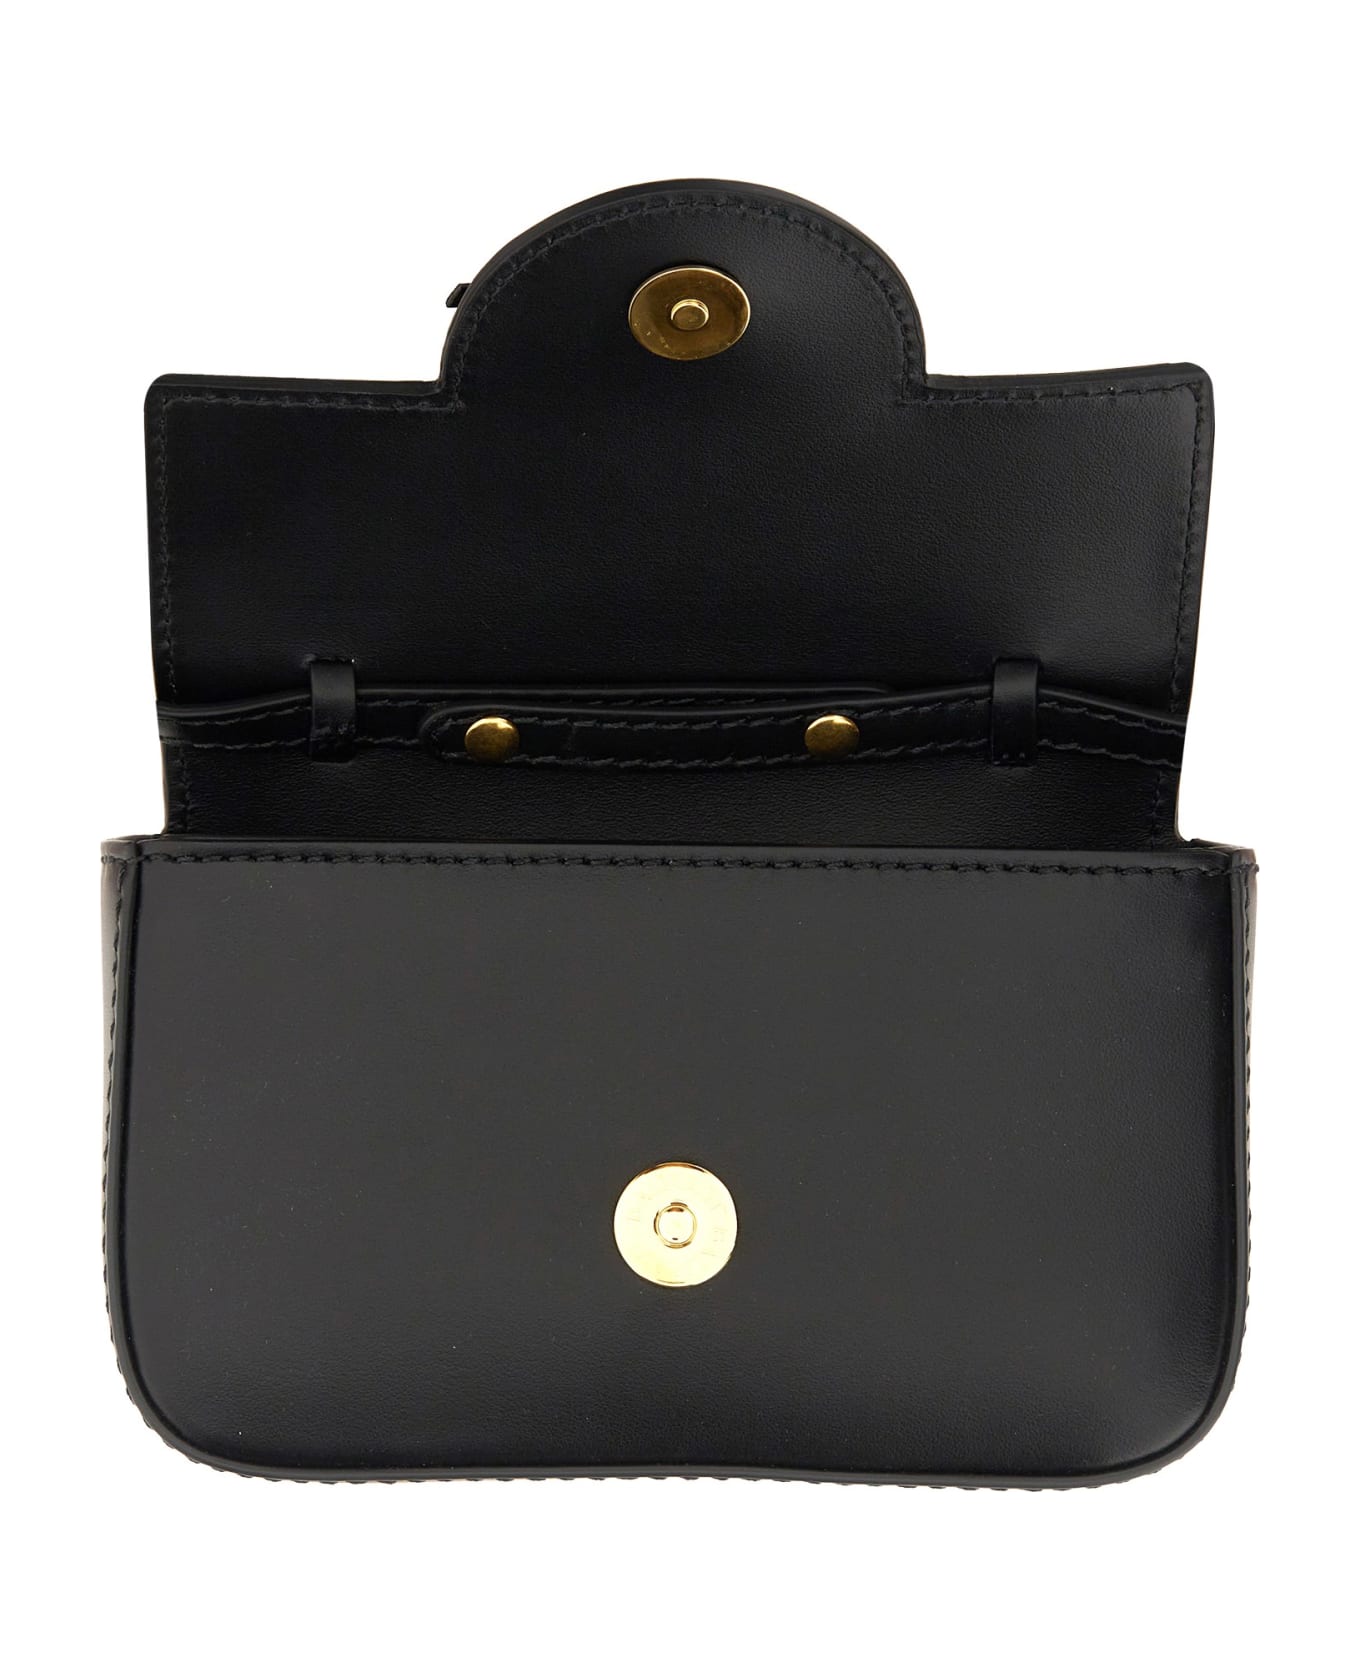 Balmain 'b-buzz Mini' Handbag - Black